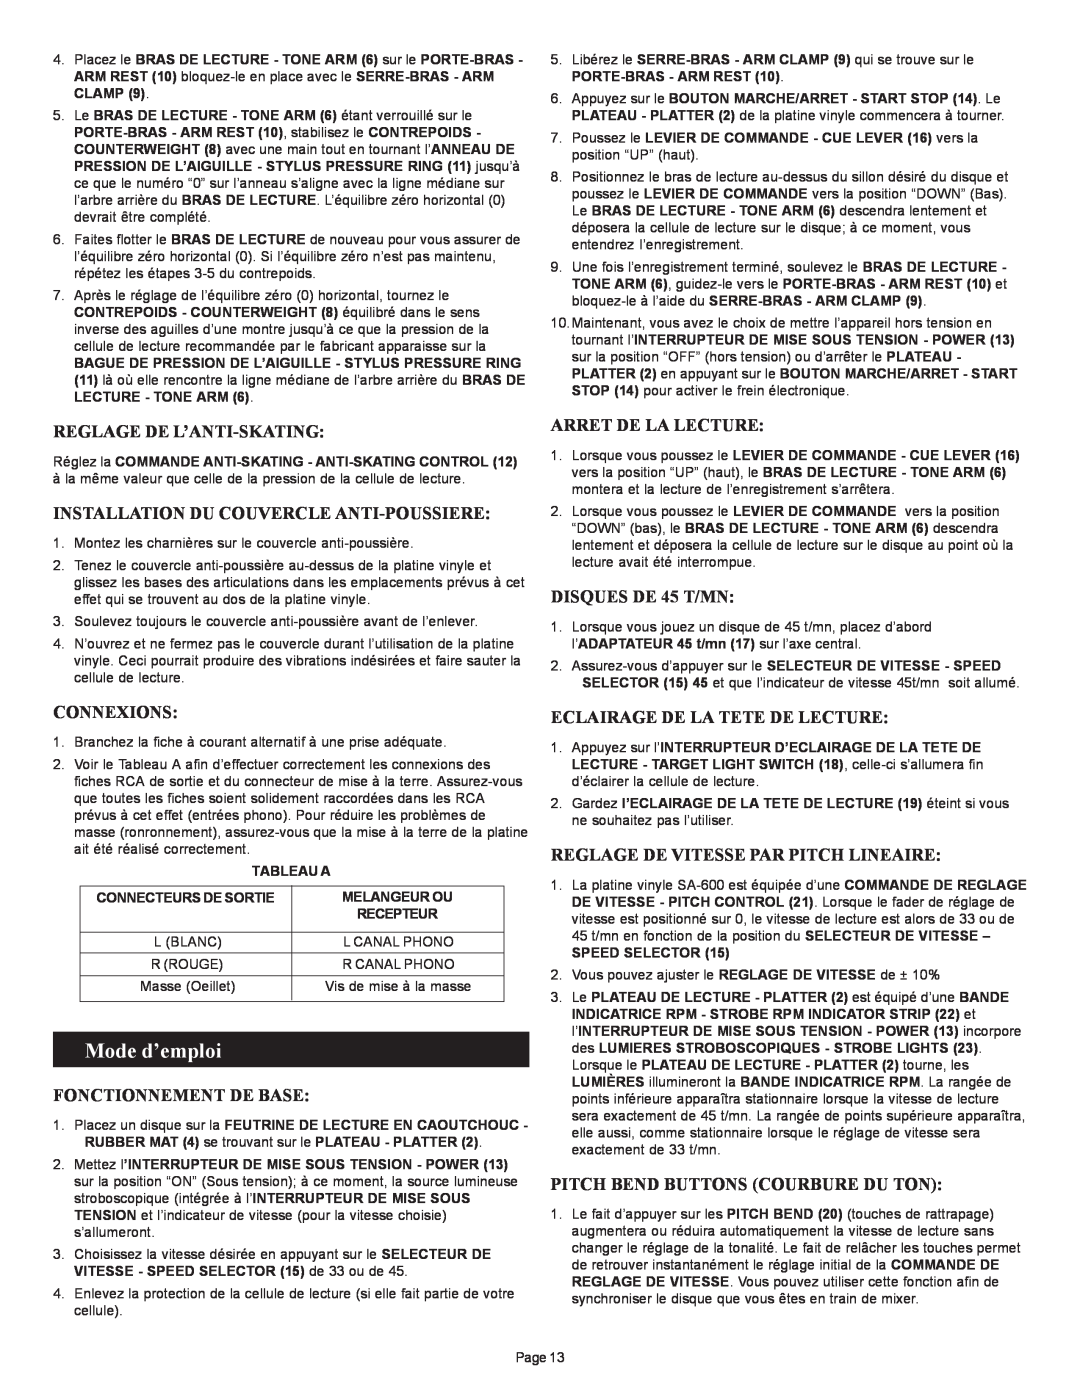 Gemini SA-600 manual Mode d’emploi, Reglage De L’Anti-Skating, Installation Du Couvercle Anti-Poussiere, Connexions 